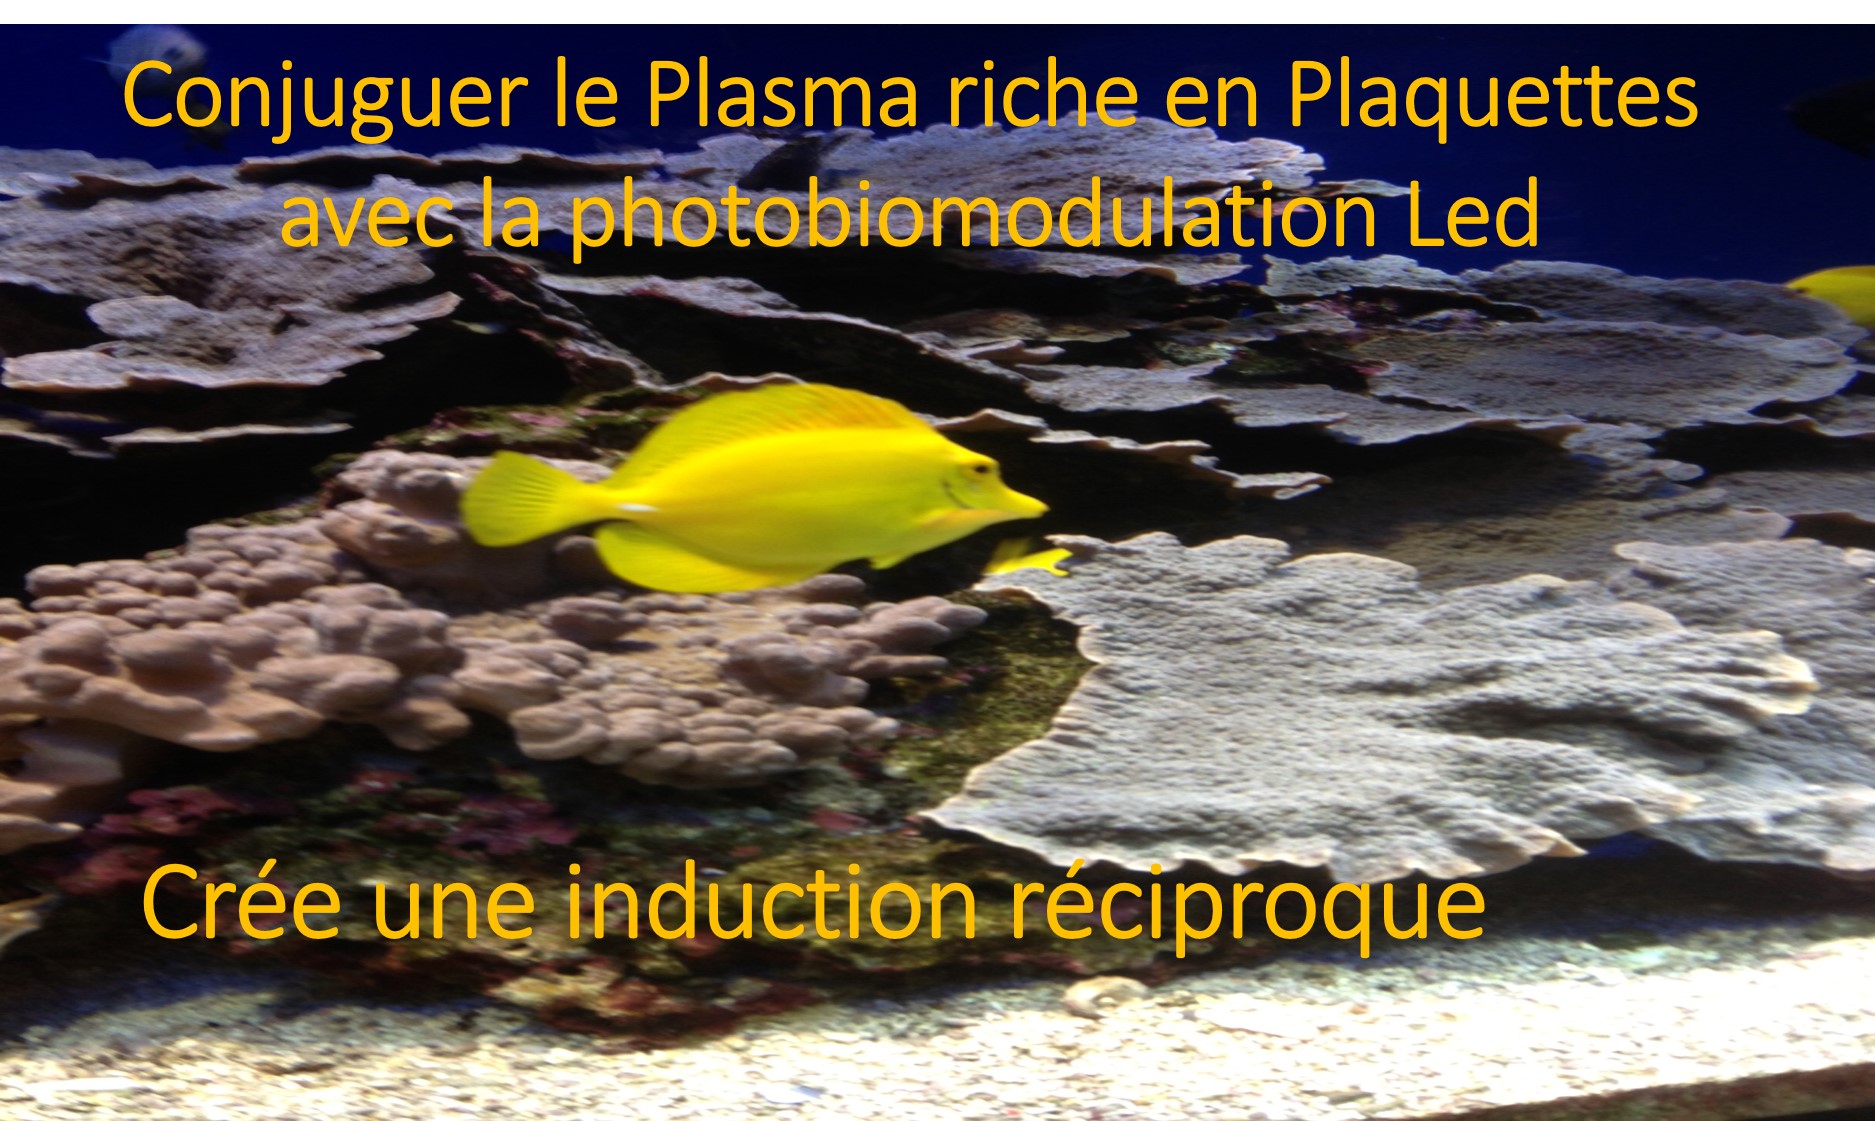 Conjuguer le Plasma riche en Plaquettes avec la photobiomodulation Led cree une induction reciproque  Dr Linda FOUQUE